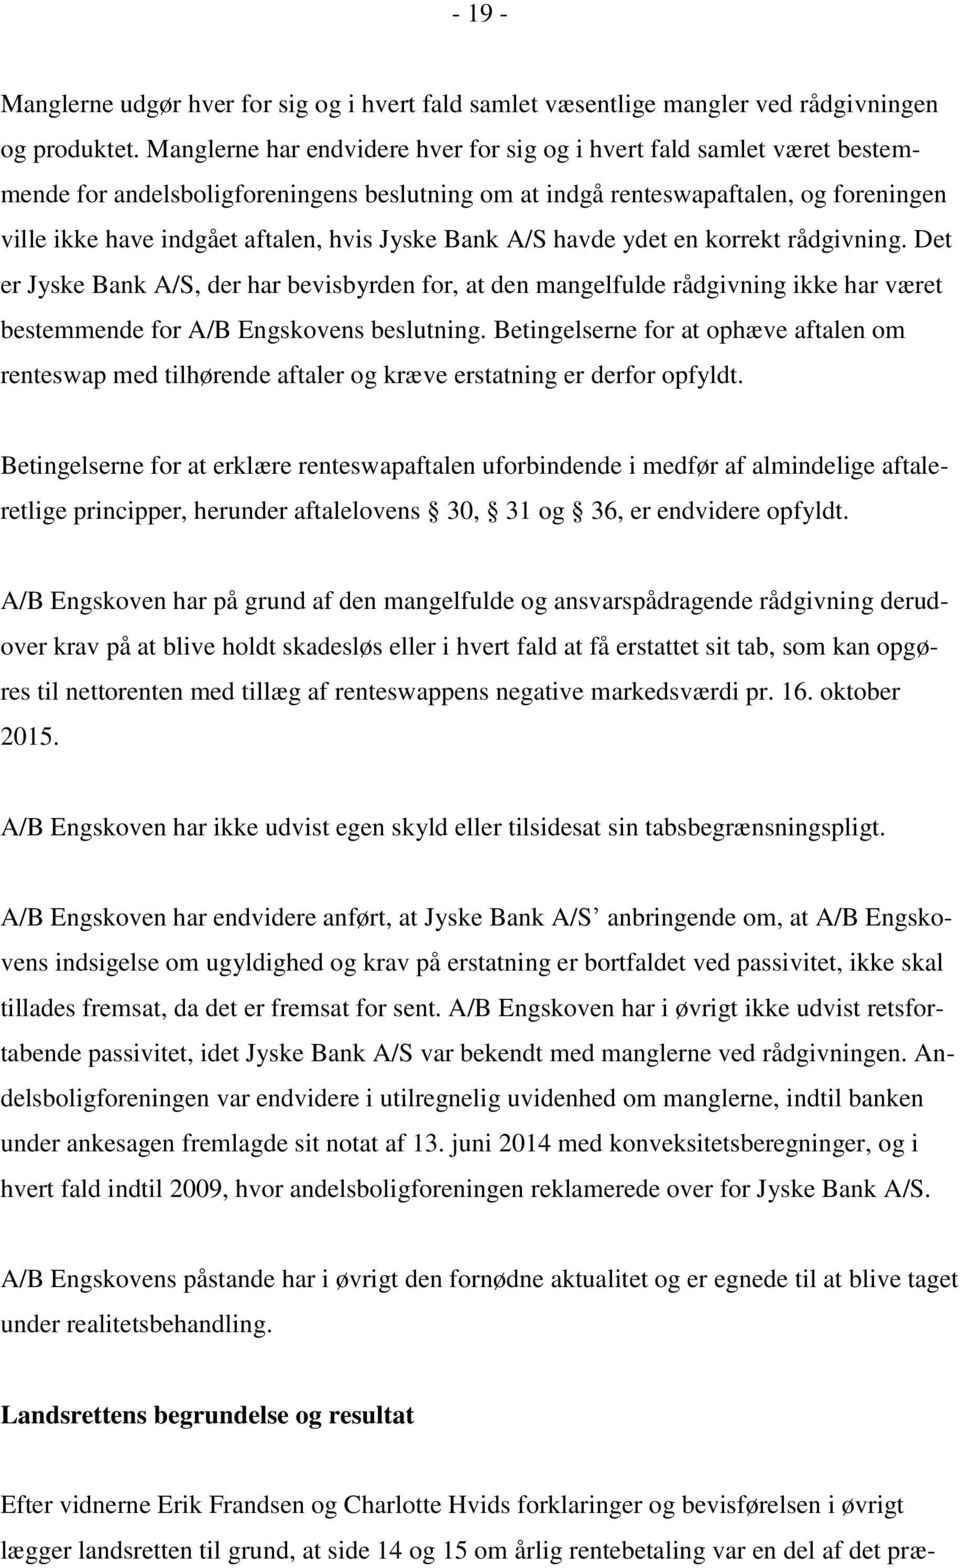 Jyske Bank A/S havde ydet en korrekt rådgivning. Det er Jyske Bank A/S, der har bevisbyrden for, at den mangelfulde rådgivning ikke har været bestemmende for A/B Engskovens beslutning.